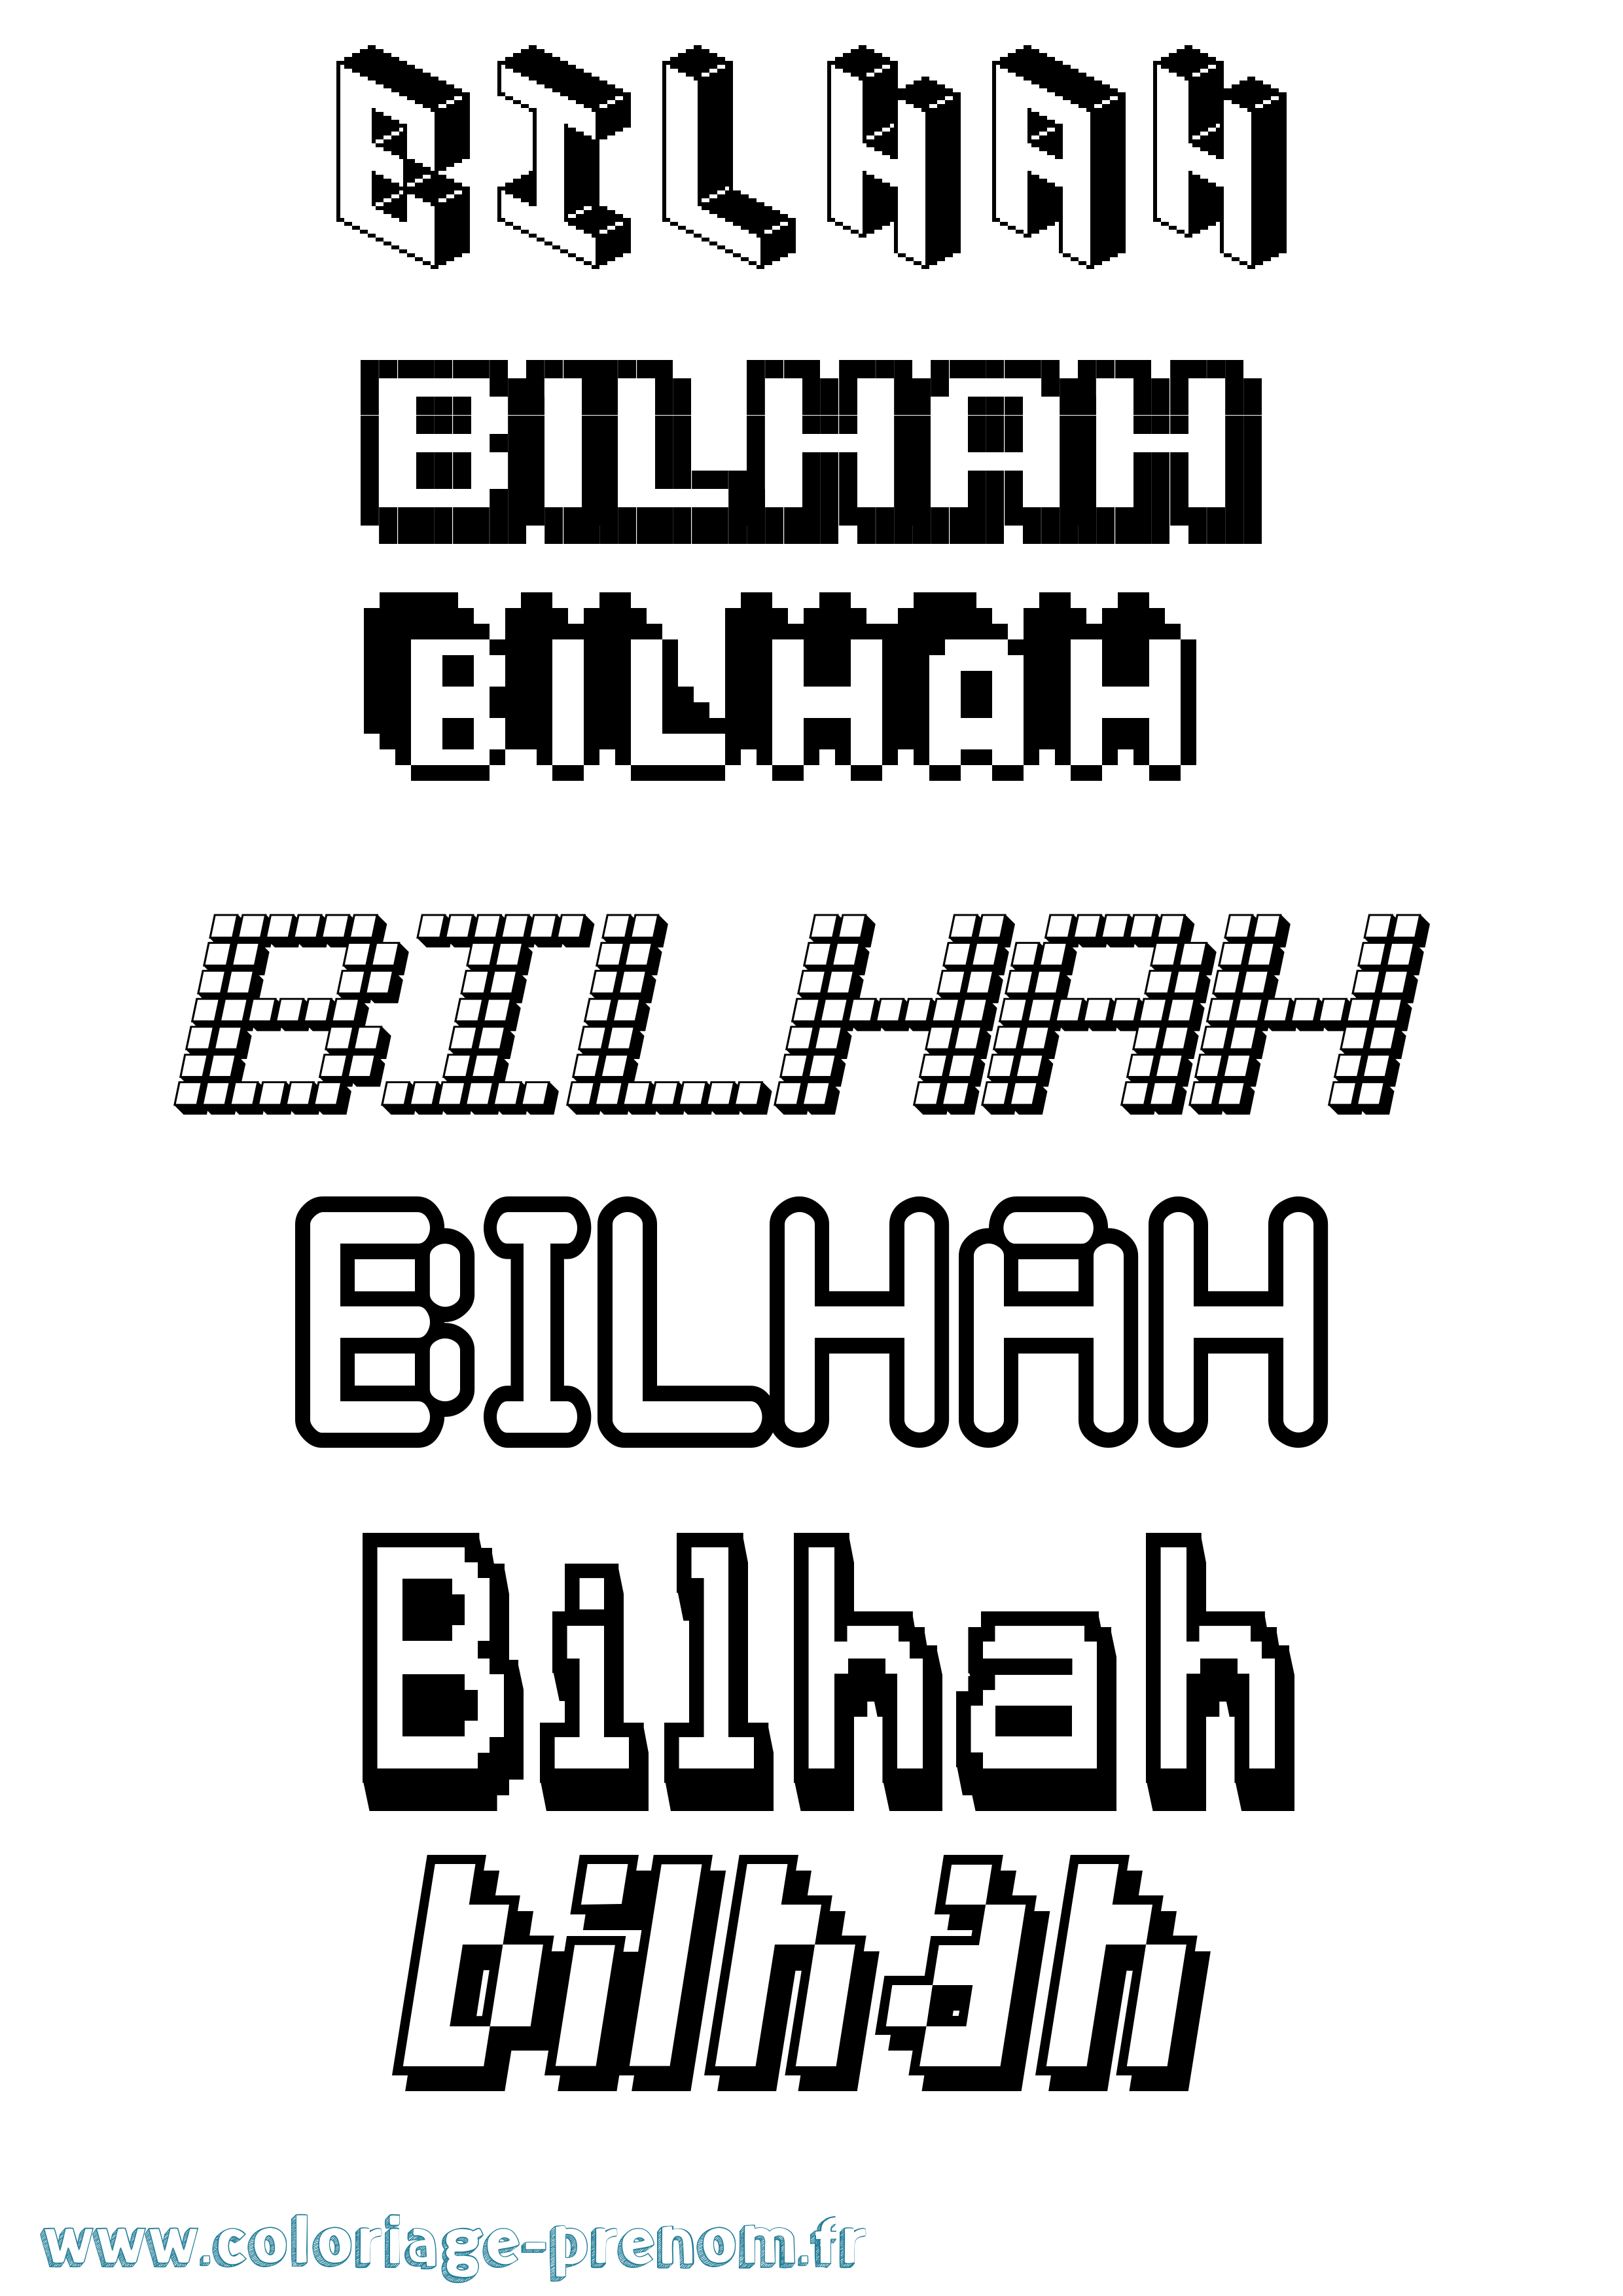 Coloriage prénom Bilhah Pixel